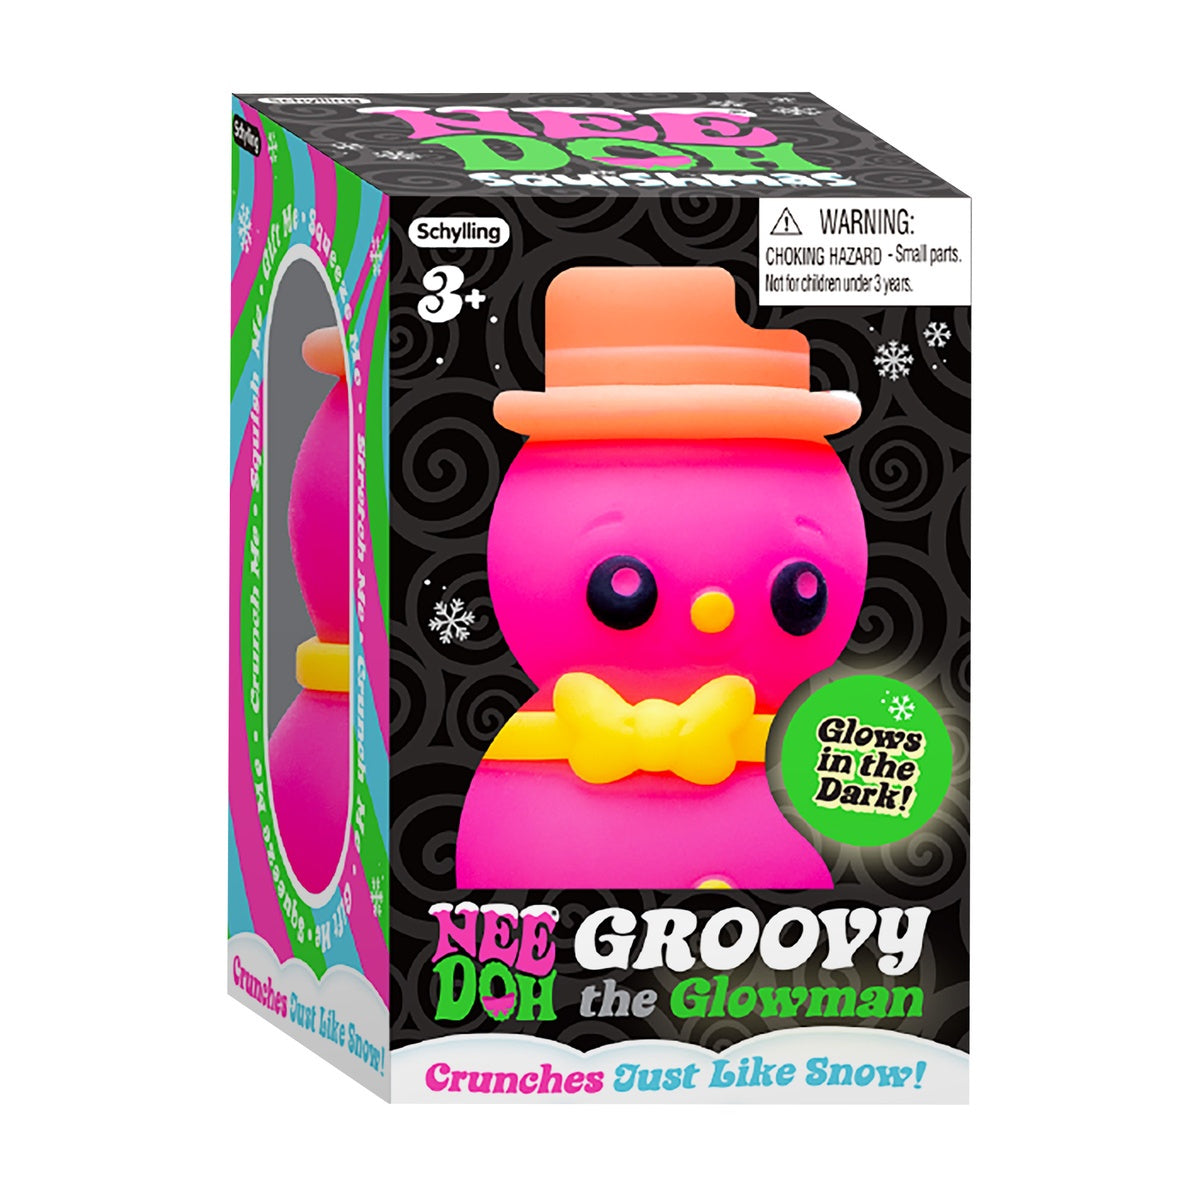 Groovy the Glowman Nee Doh